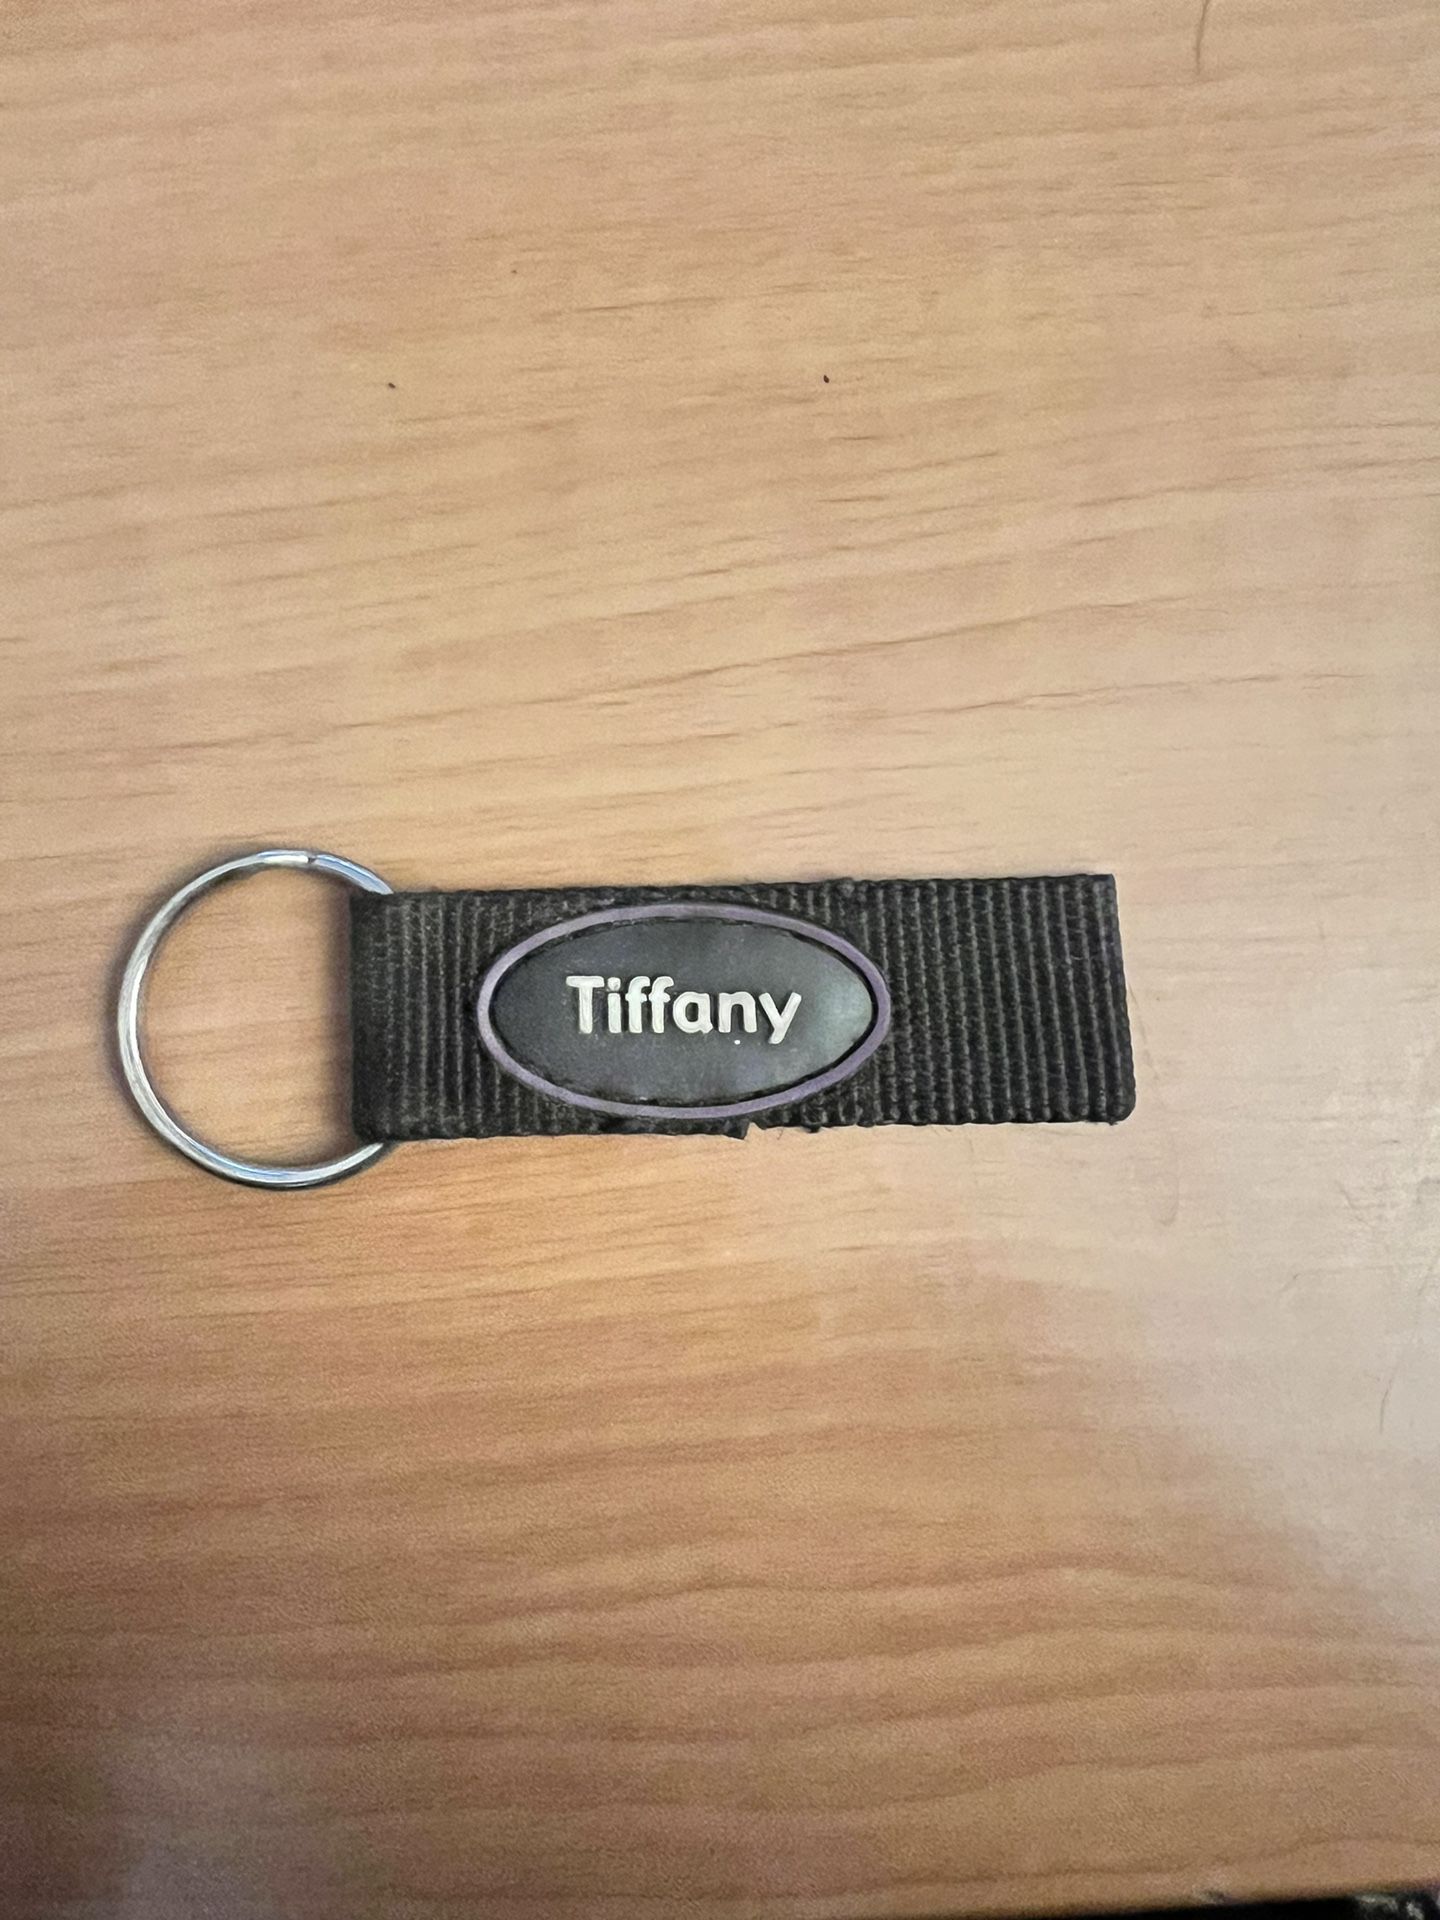 Tiffany Special Keychain